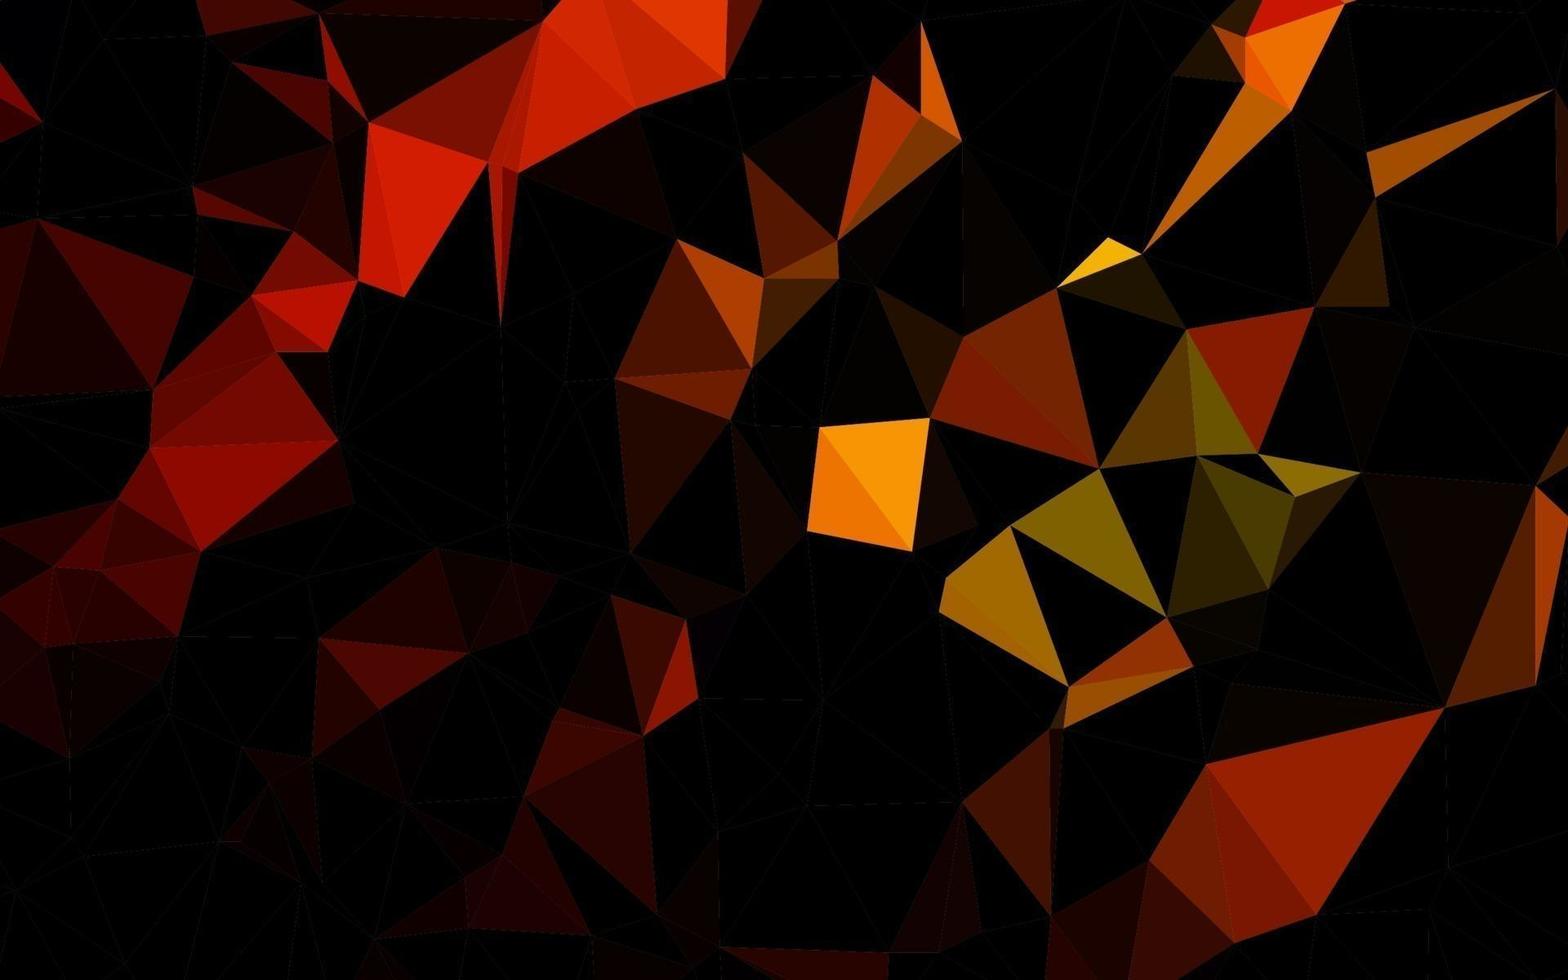 Cubierta poligonal abstracta de vector naranja oscuro.